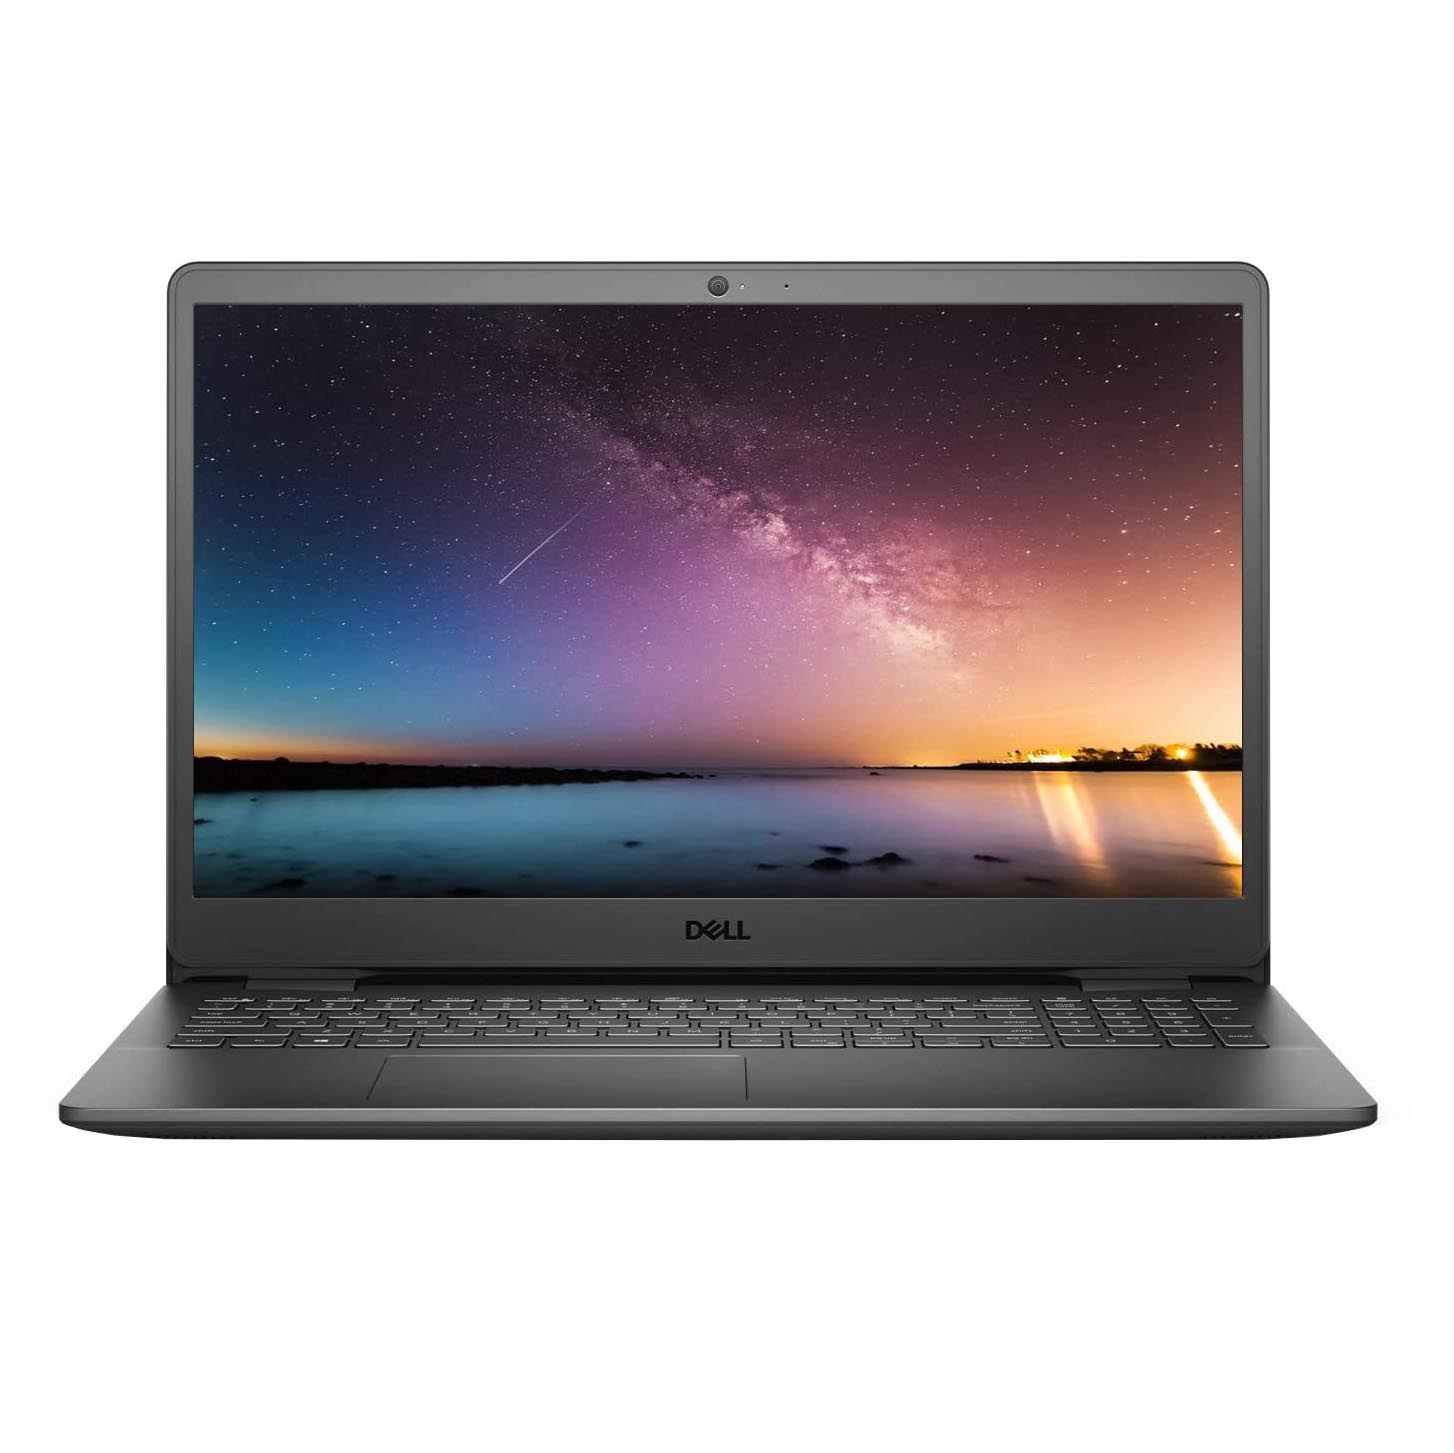 Ноутбук Dell Inspiron 15 3501 15.6, 16 Гб/1 Тб, черный, английская клавиатура ноутбук dell g5 15 5510 15 6 16 гб 1 тб темно серый английская клавиатура